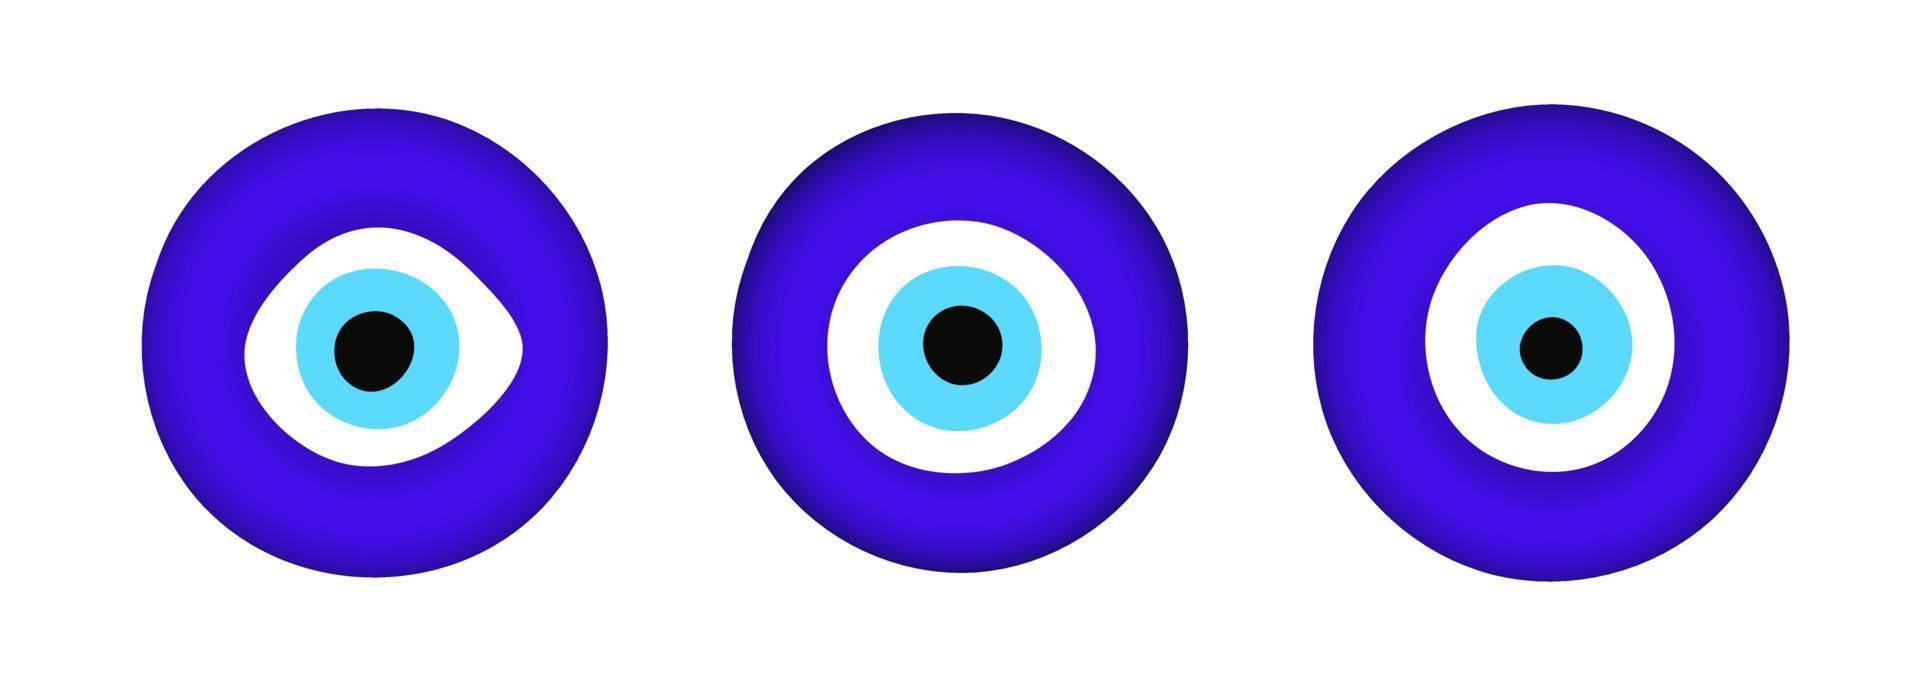 blauwe oosterse boze oog symbool amulet vlakke stijl ontwerp vectorillustratie geïsoleerd op een witte achtergrond. vector